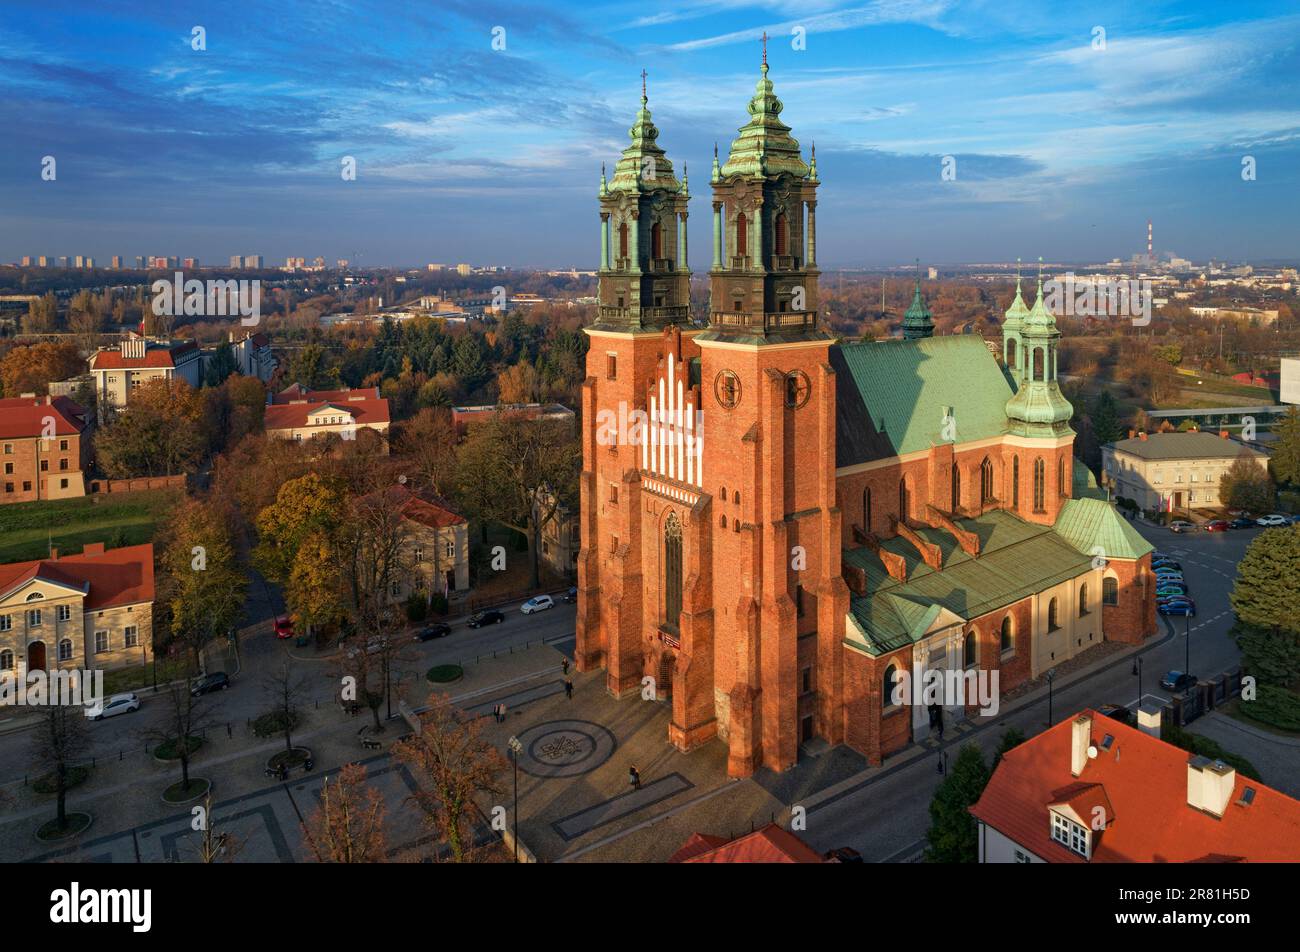 Luftaufnahme der Kathedrale von Poznań - Erzkathedrale Basilika St. Peter und St. Paul, polnische gotische Architektur, Wielkopolska, Polen Stockfoto